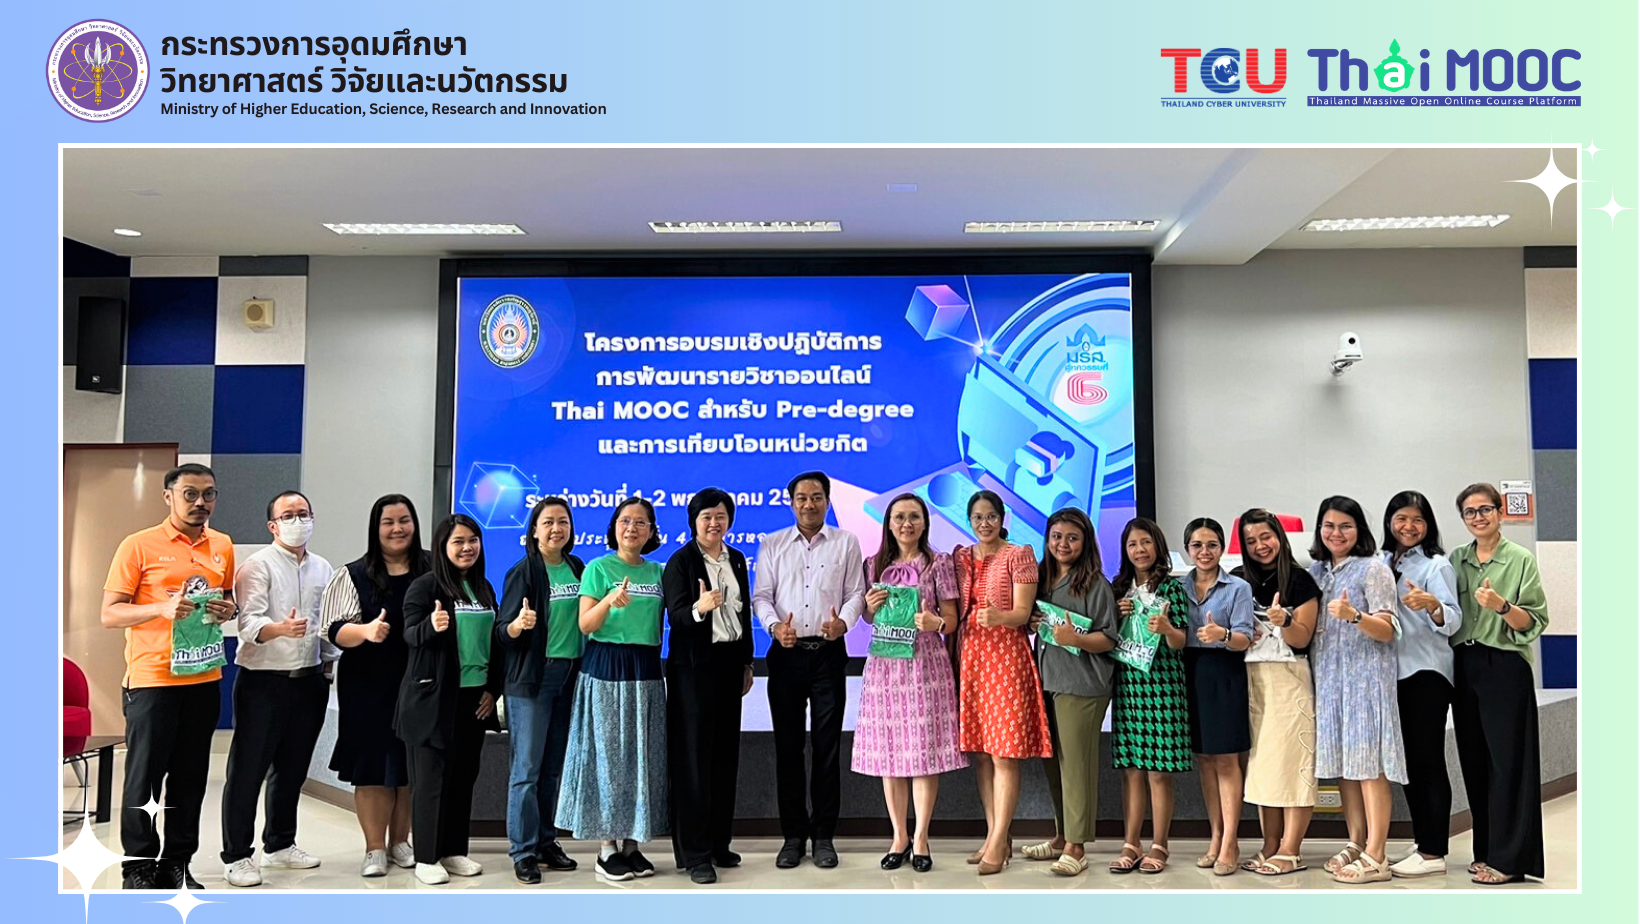 เปิดงาน “โครงการอบรมเชิงปฏิบัติการ การพัฒนารายวิชาออนไลน์ Thai MOOC สำหรับ Pre-degree และการเทียบโอนหน่วยกิต” ที่จัดขึ้น ณ มหาวิทยาราชภัฏสุราษฎร์ธานี